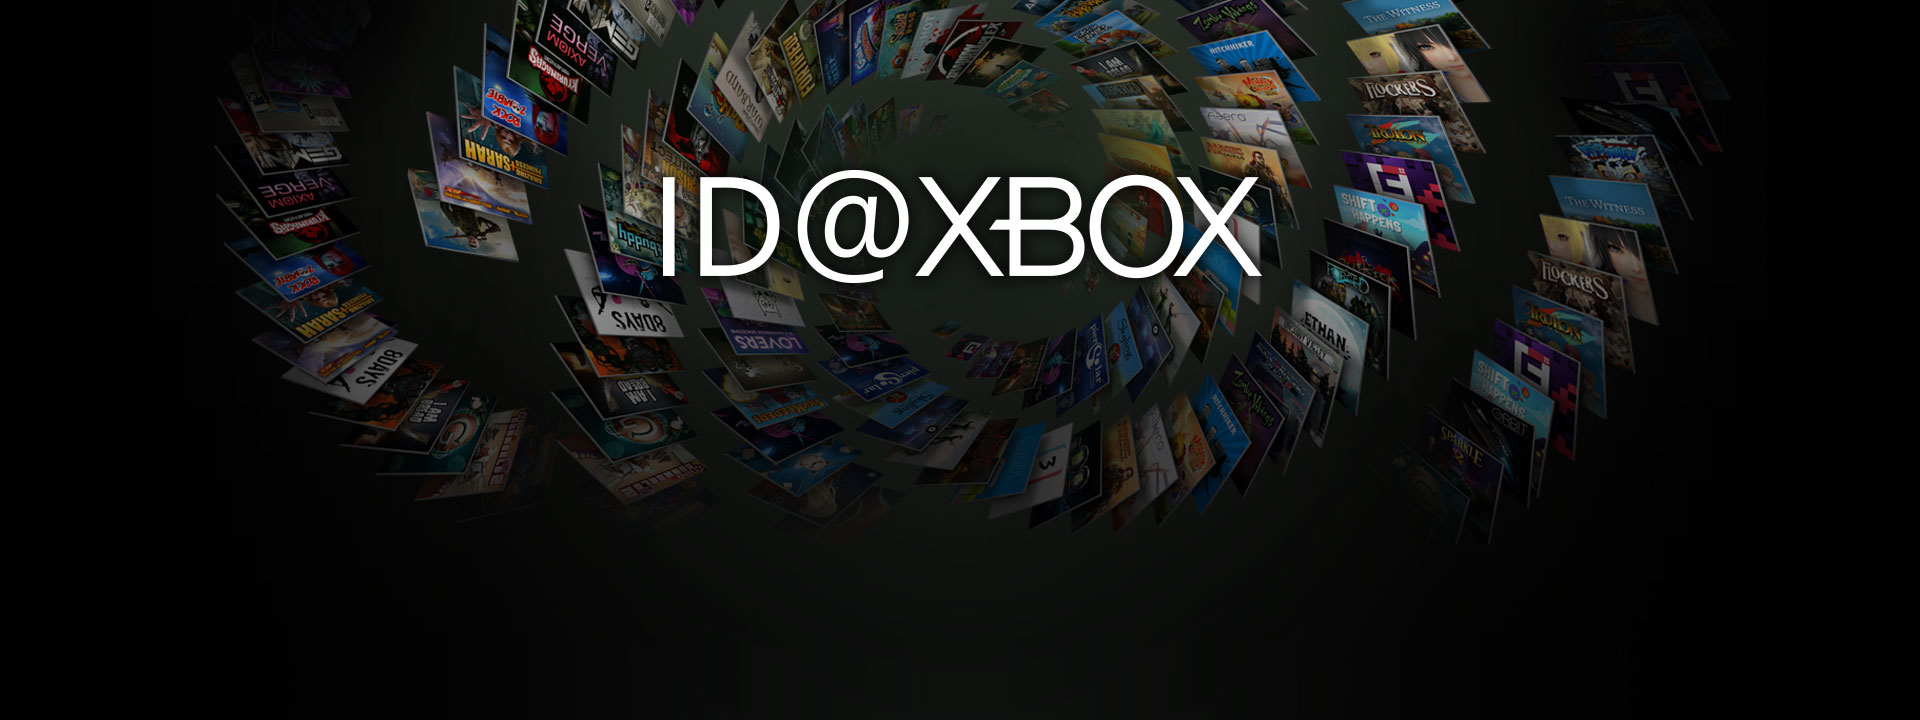 Logo ID w Xbox na tle zbioru zdjęć opakowań gier stworzonych w ramach programu ID